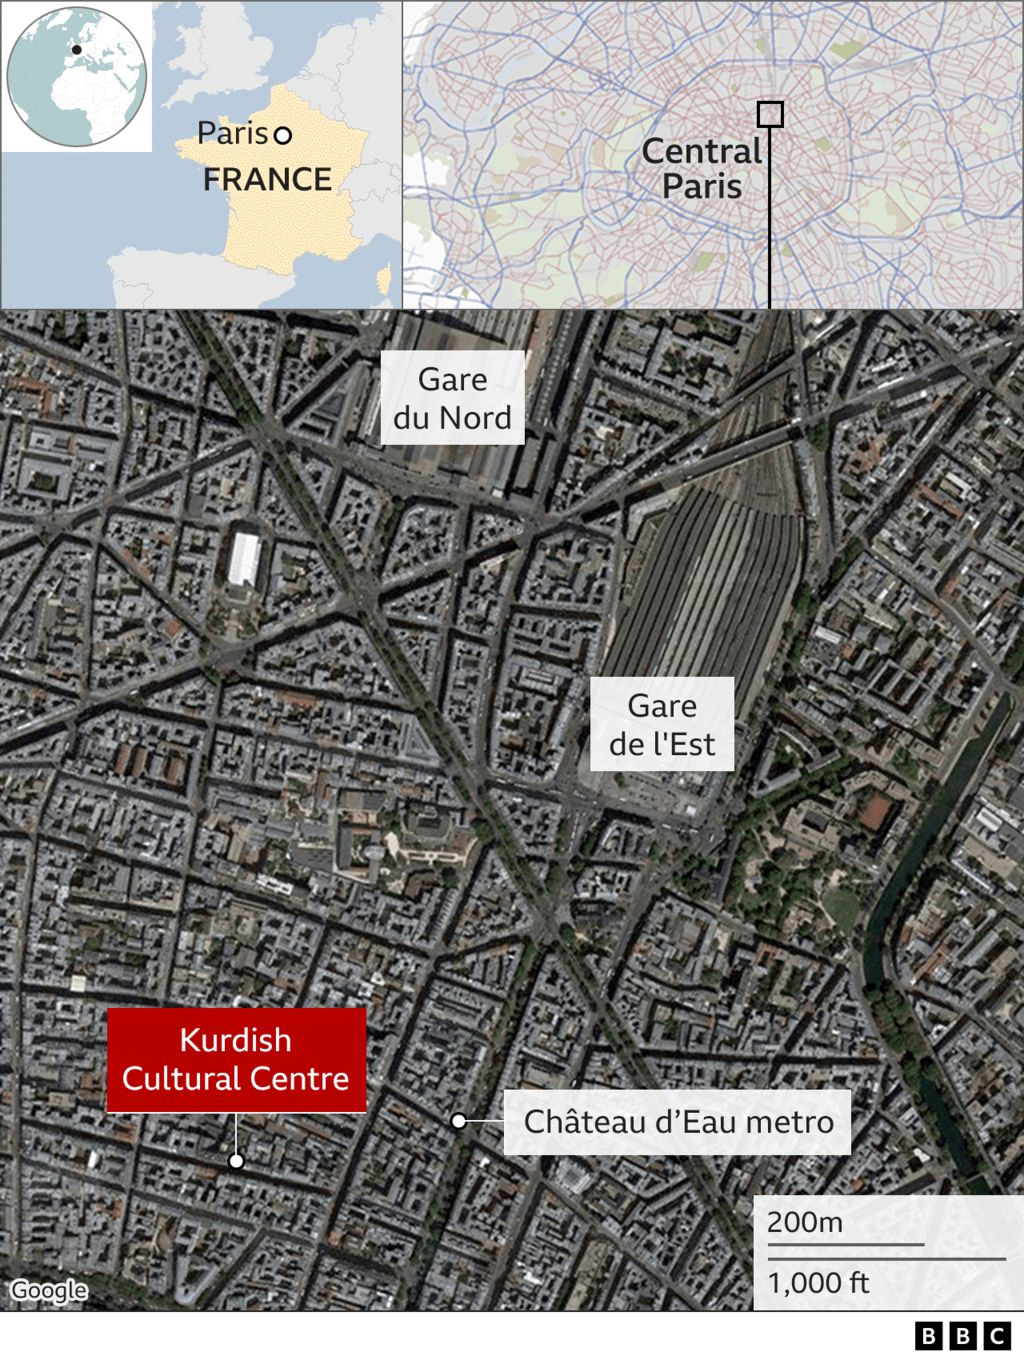 Карта район, где произошла стрельба в Париже